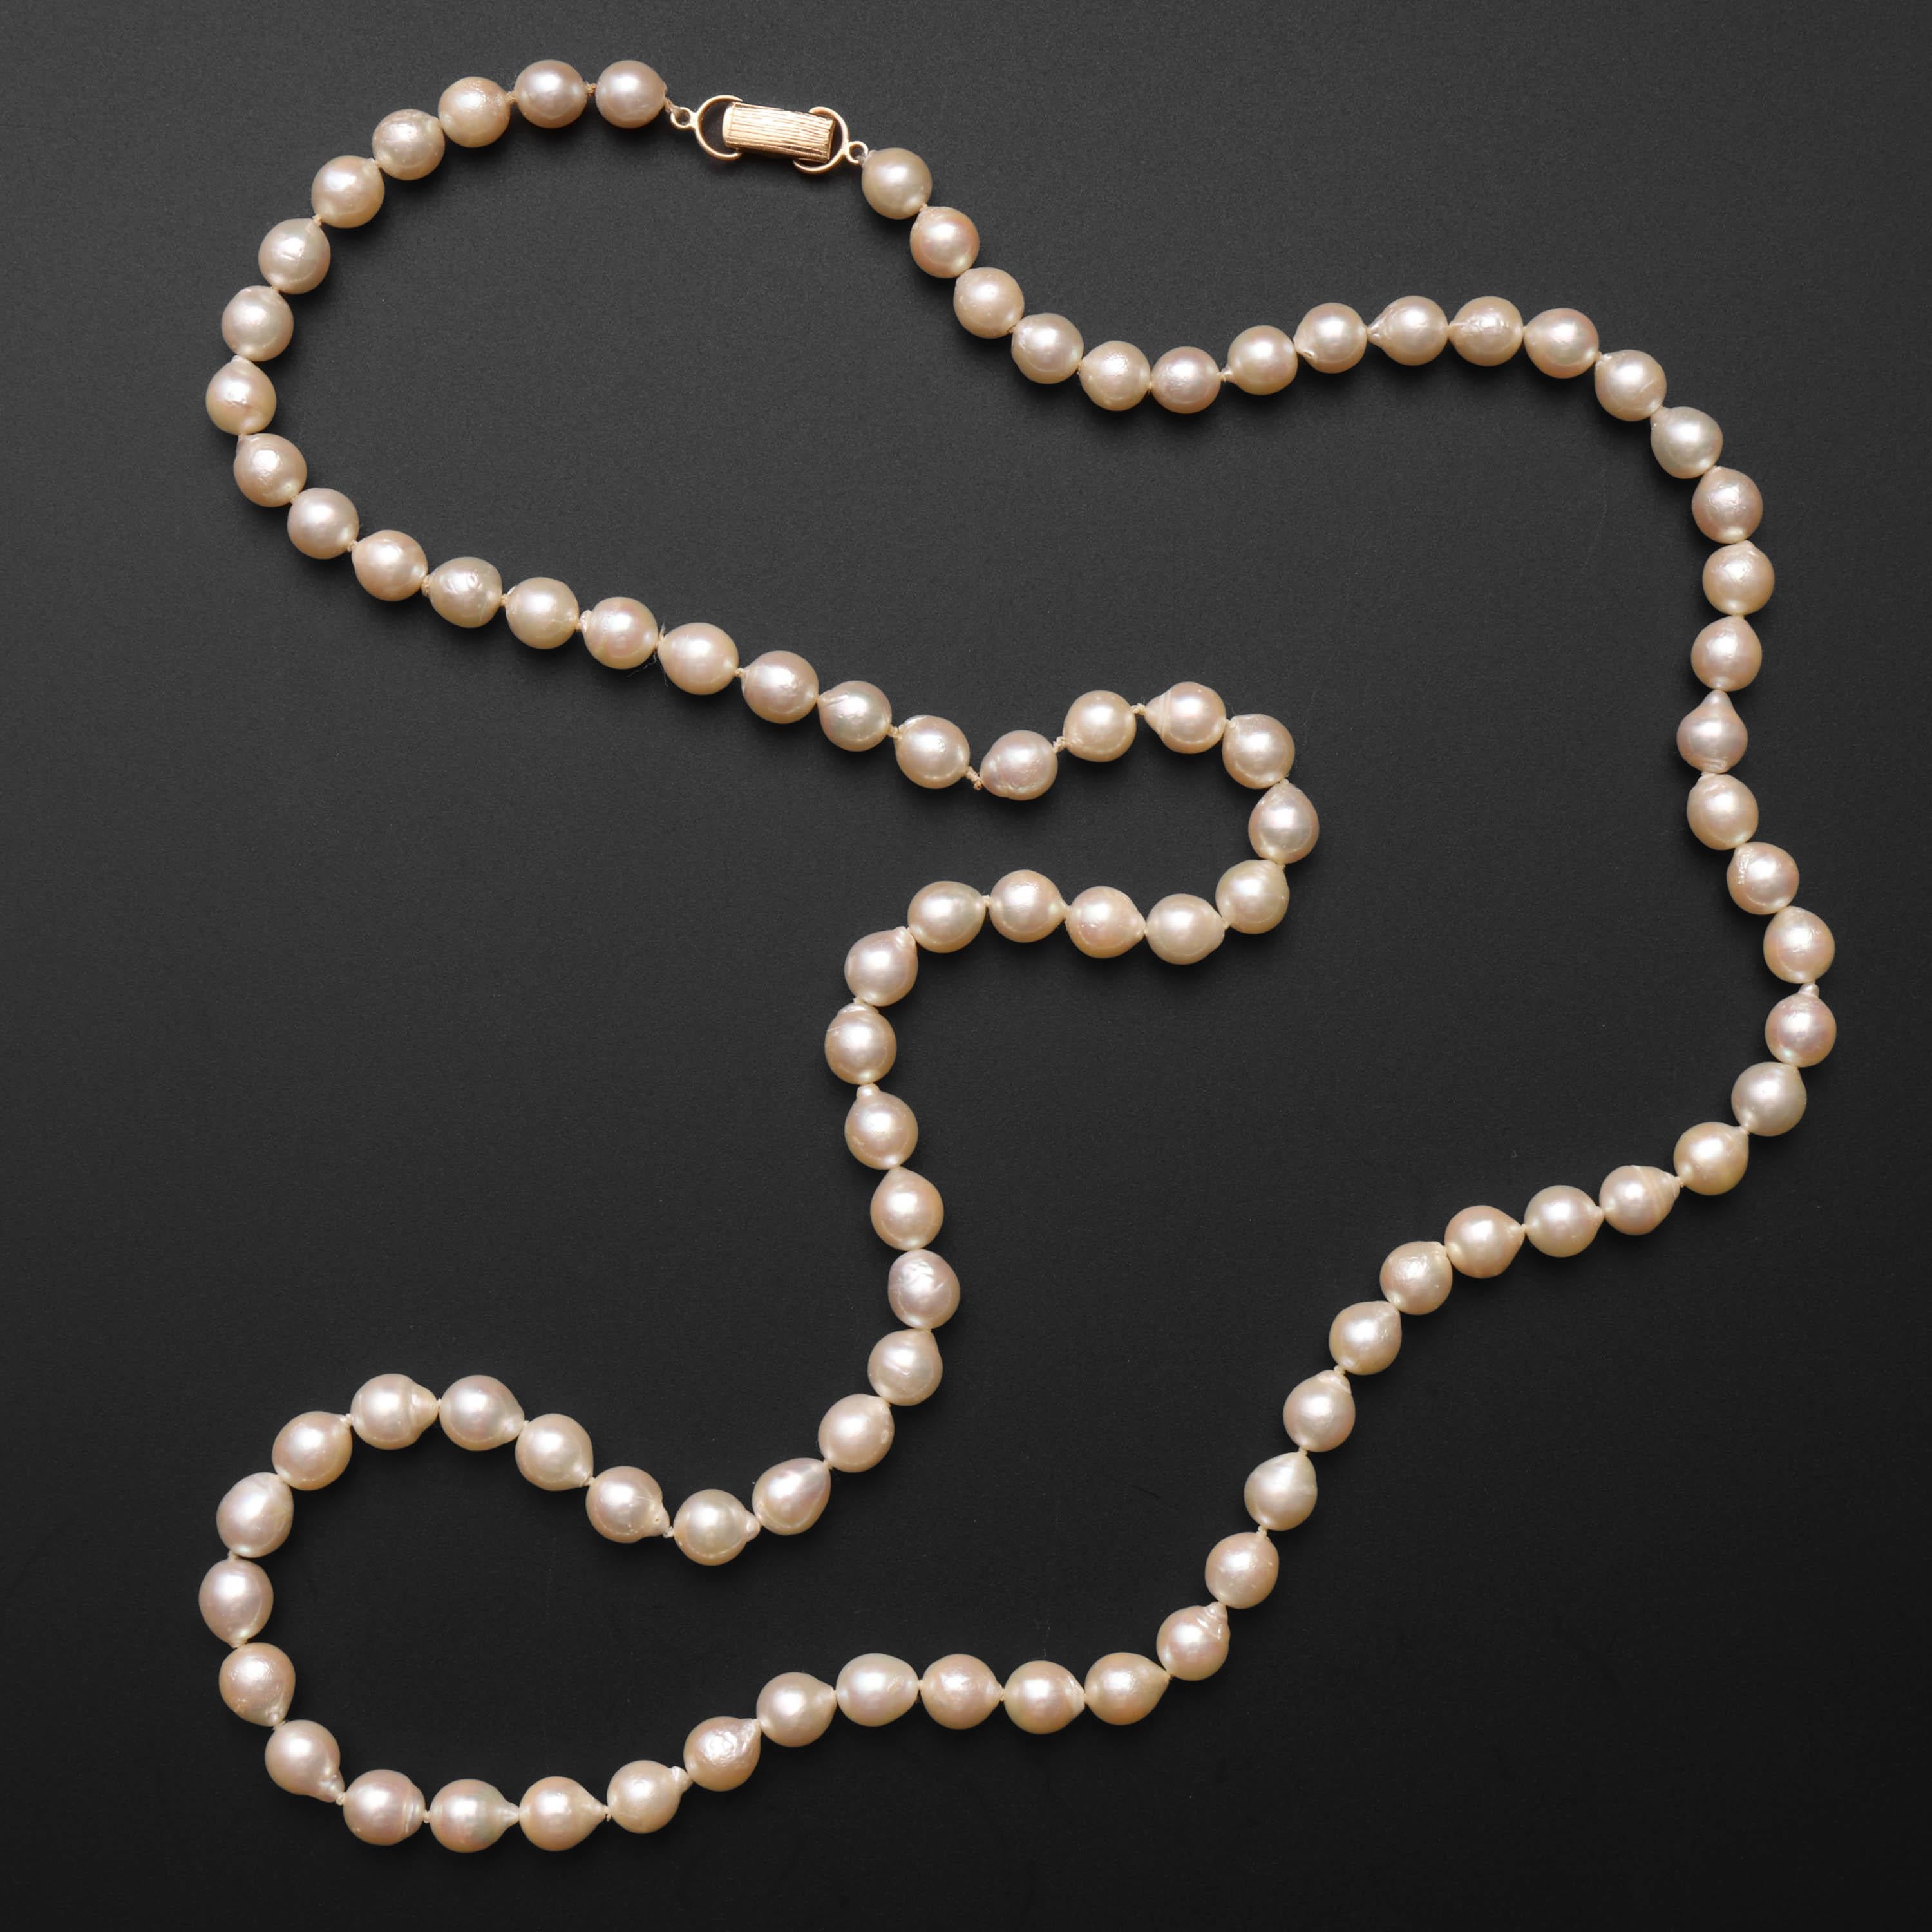 Ce collier de perles d'Akoya cultivées a été créé dans les années 1970 par le vénérable bijoutier de luxe hawaïen, Ming's. Composé de 89 perles d'Akoya semi-baroques et brillantes d'une taille moyenne de 7,5 mm, ce collier d'une longueur de 31